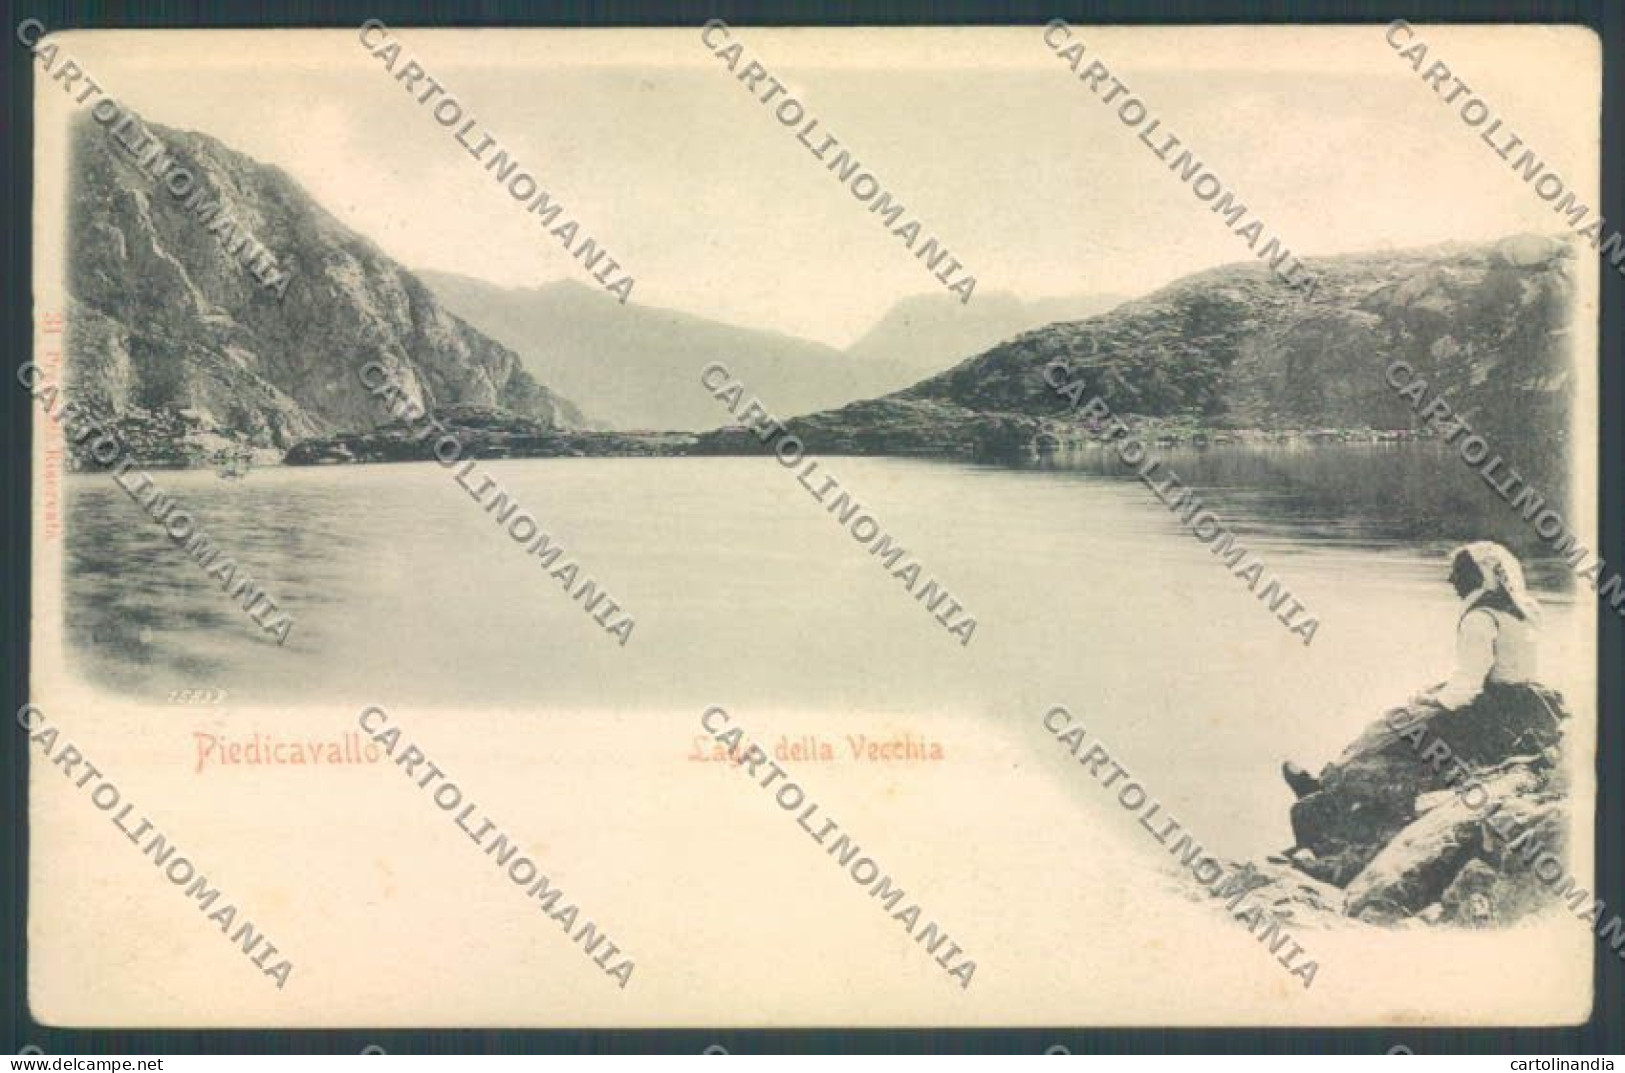 Biella Piedicavallo Lago Vecchia Cartolina ZT5573 - Biella